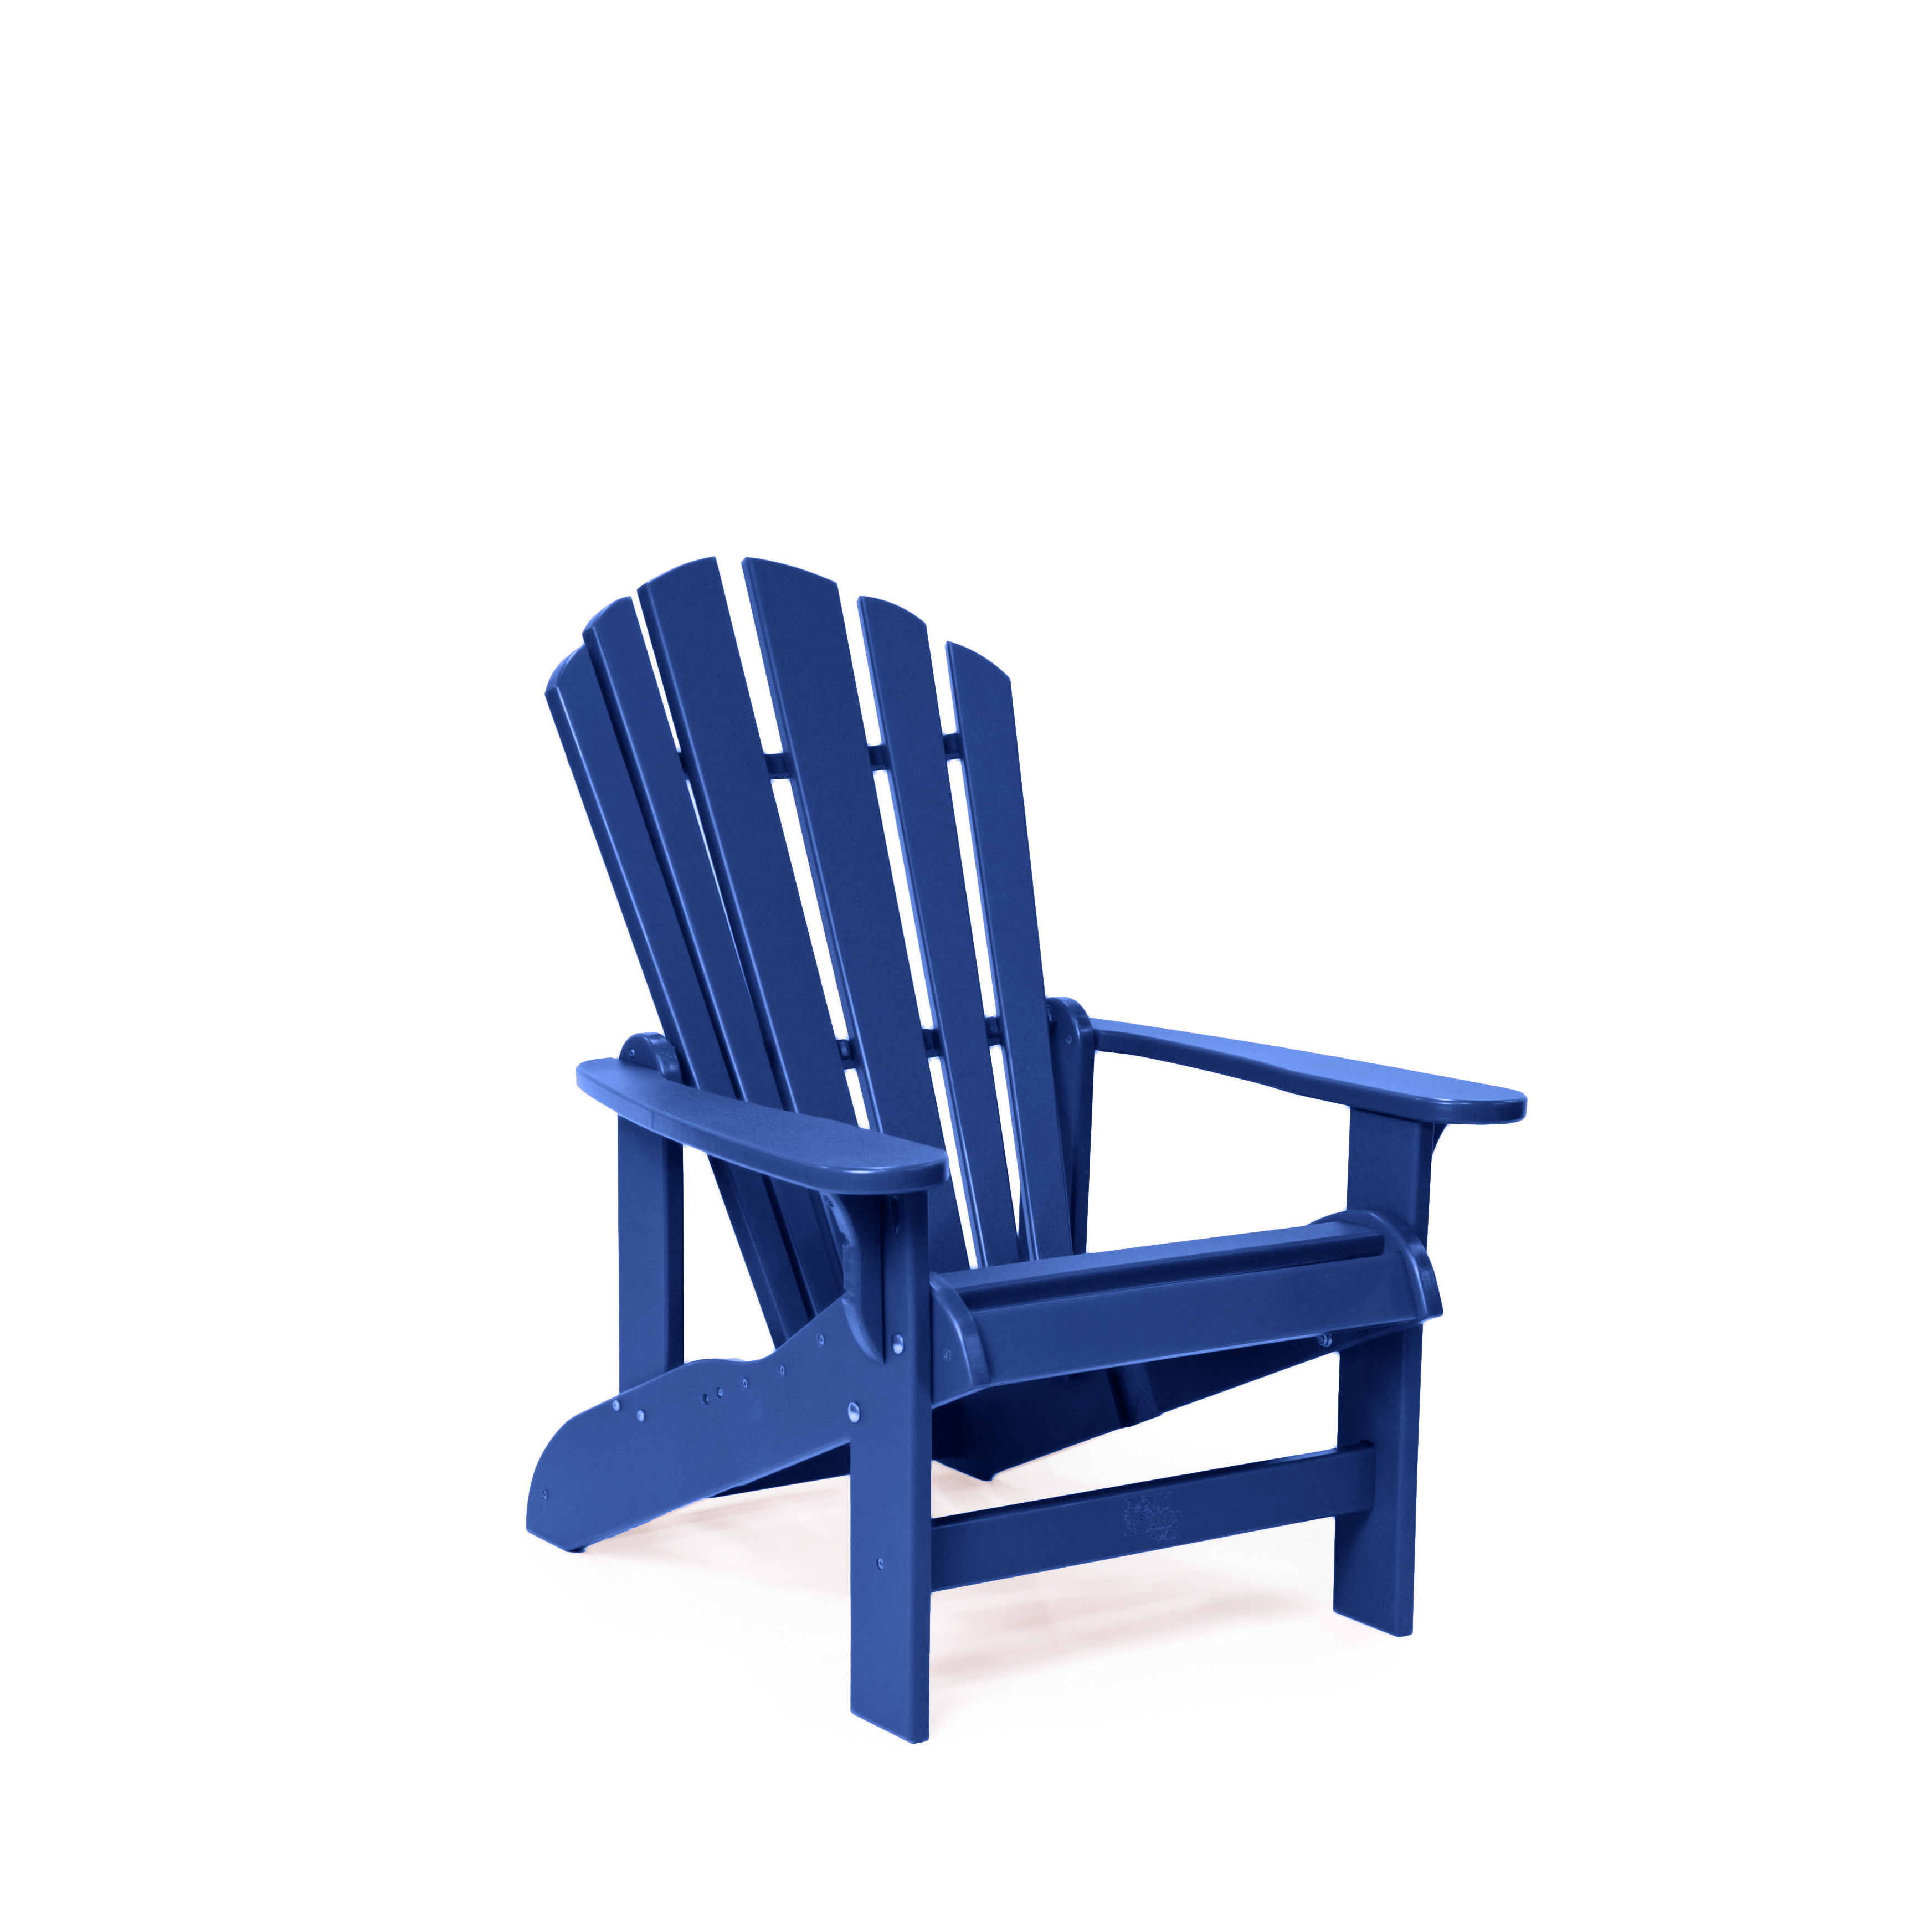 Childs Adirondack Chair